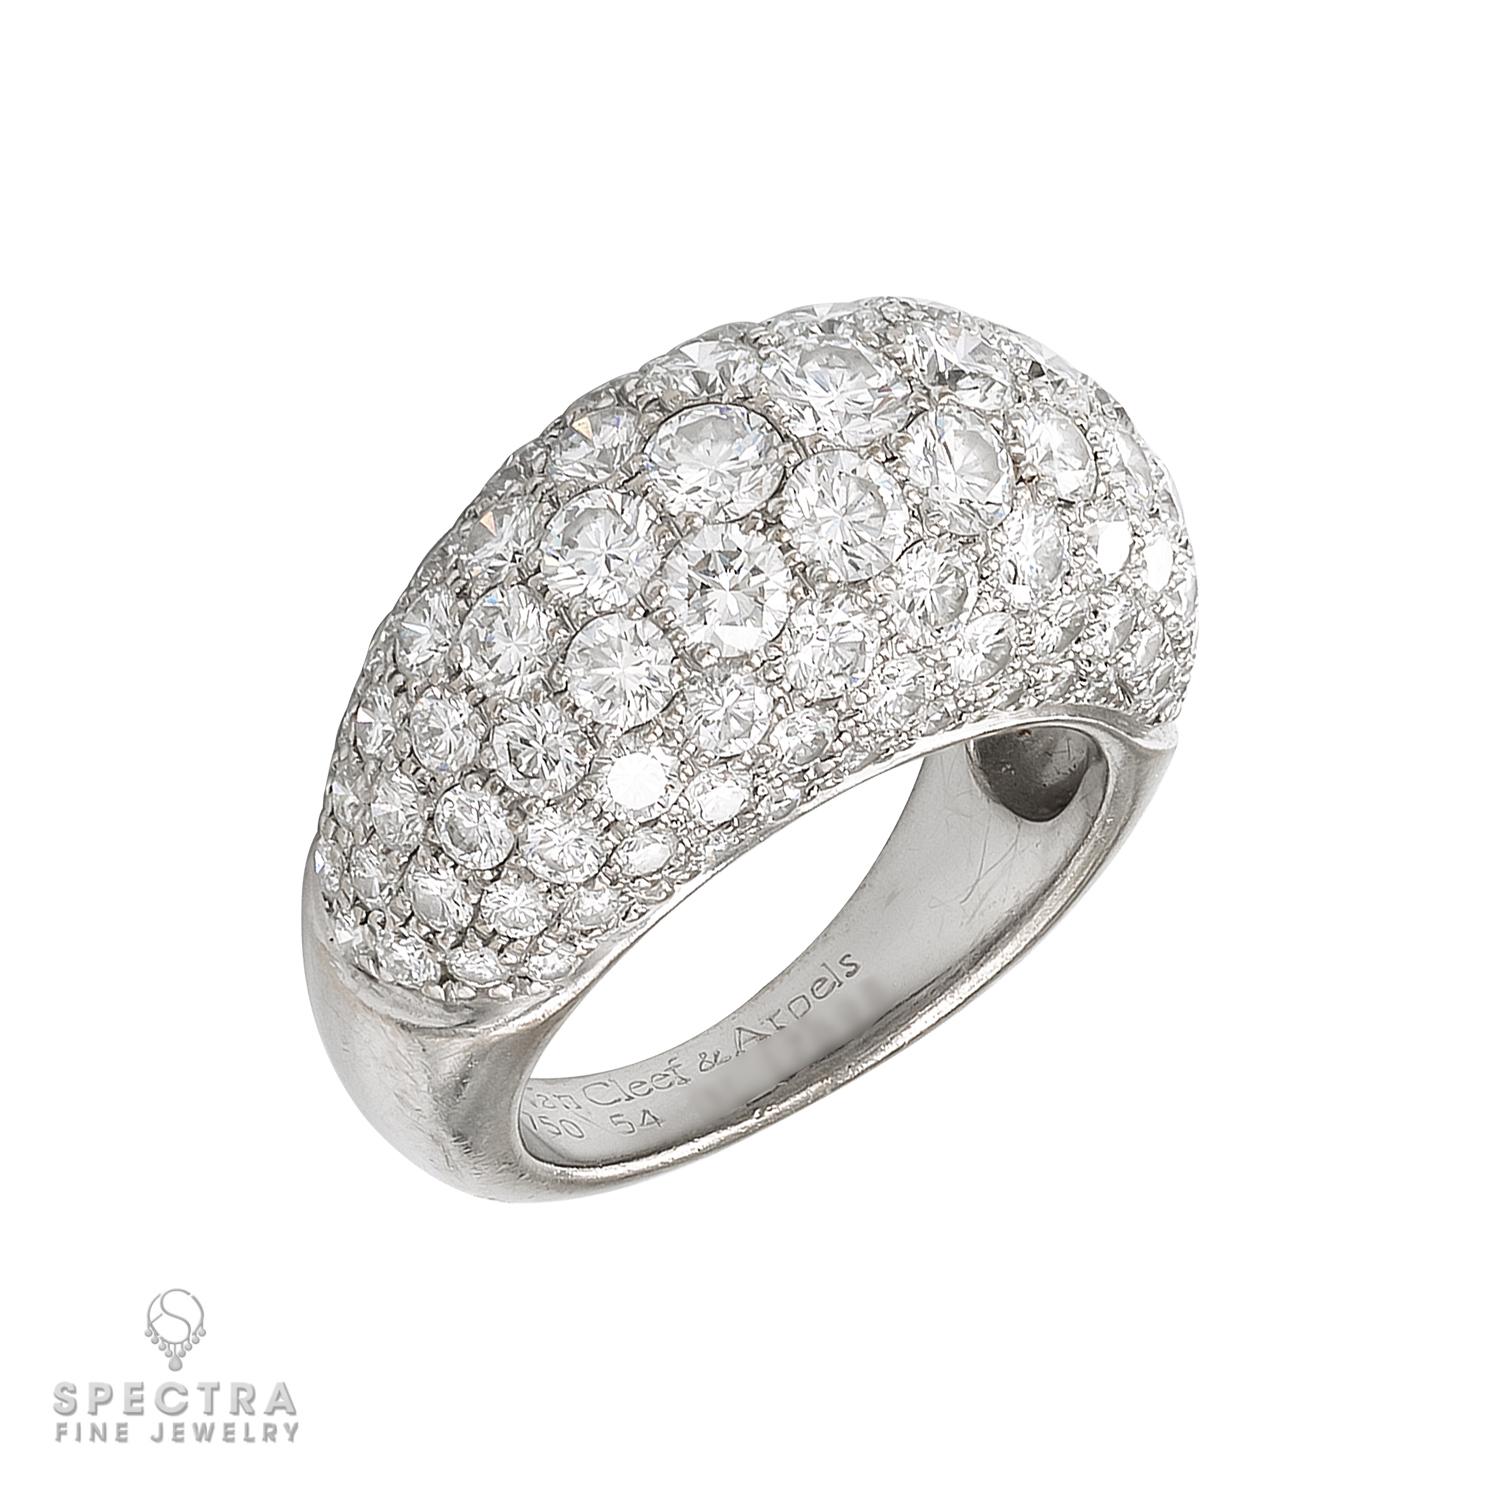 Das Van Cleef & Arpels 18k White Gold Diamond Set ist der Inbegriff von luxuriöser Eleganz und außergewöhnlicher Handwerkskunst. Dieses exquisite Set besteht aus einem Paar diamantbesetzter Ohrringe und einem passenden Ring, beide aus 18 Karat